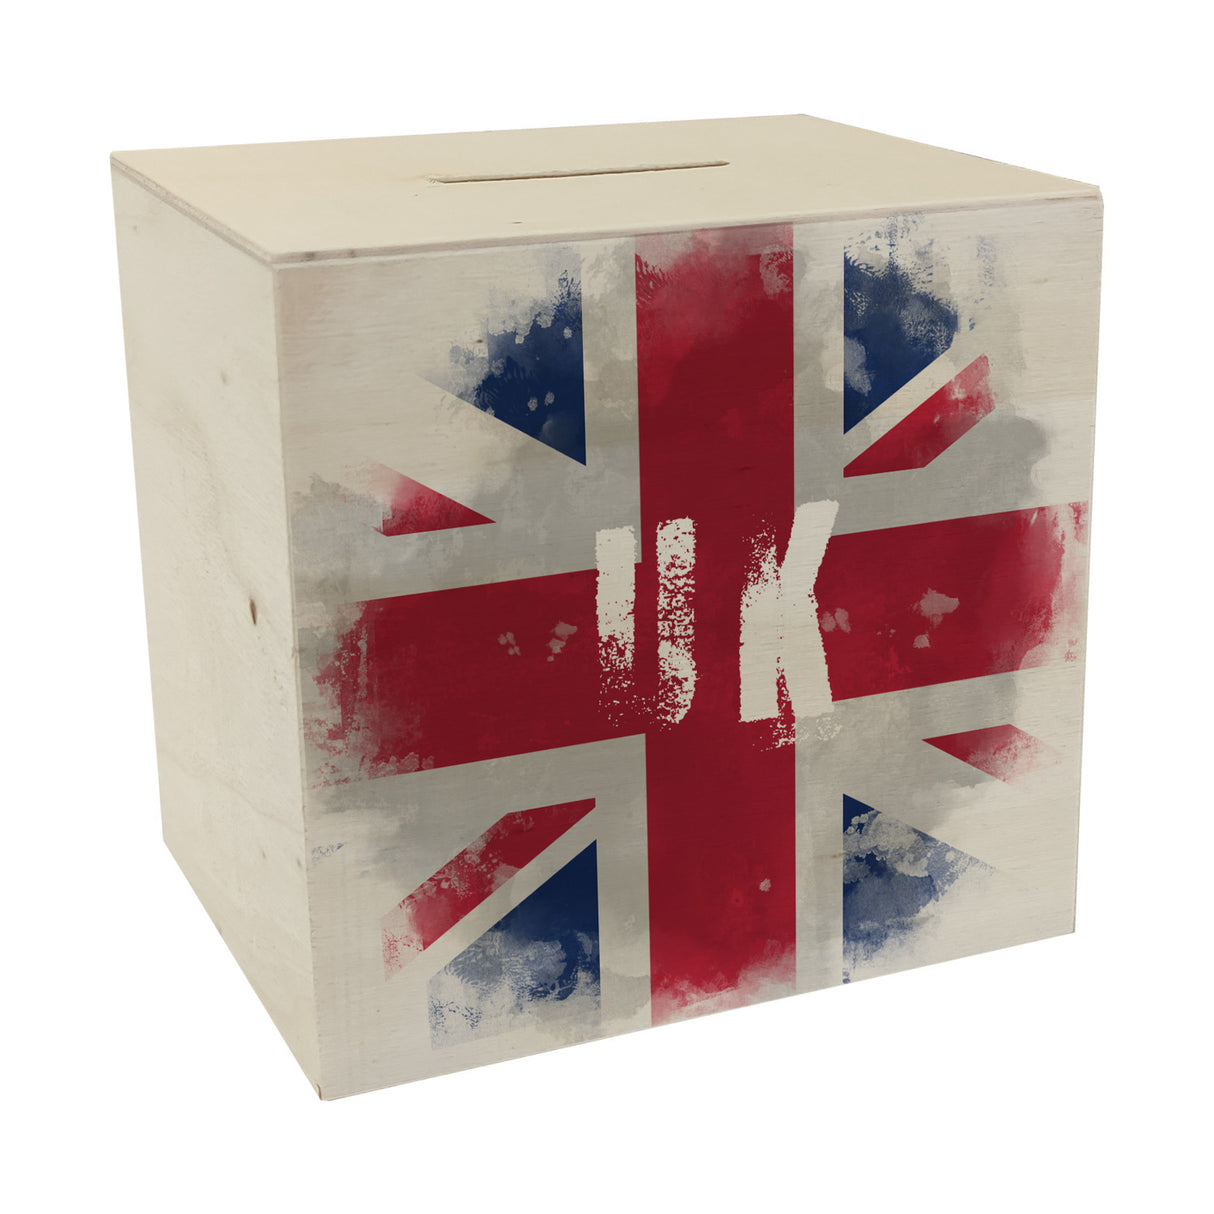 Spardose Vereinigtes Königreich-Flagge im Used Look - Sparschwein für Urlauber